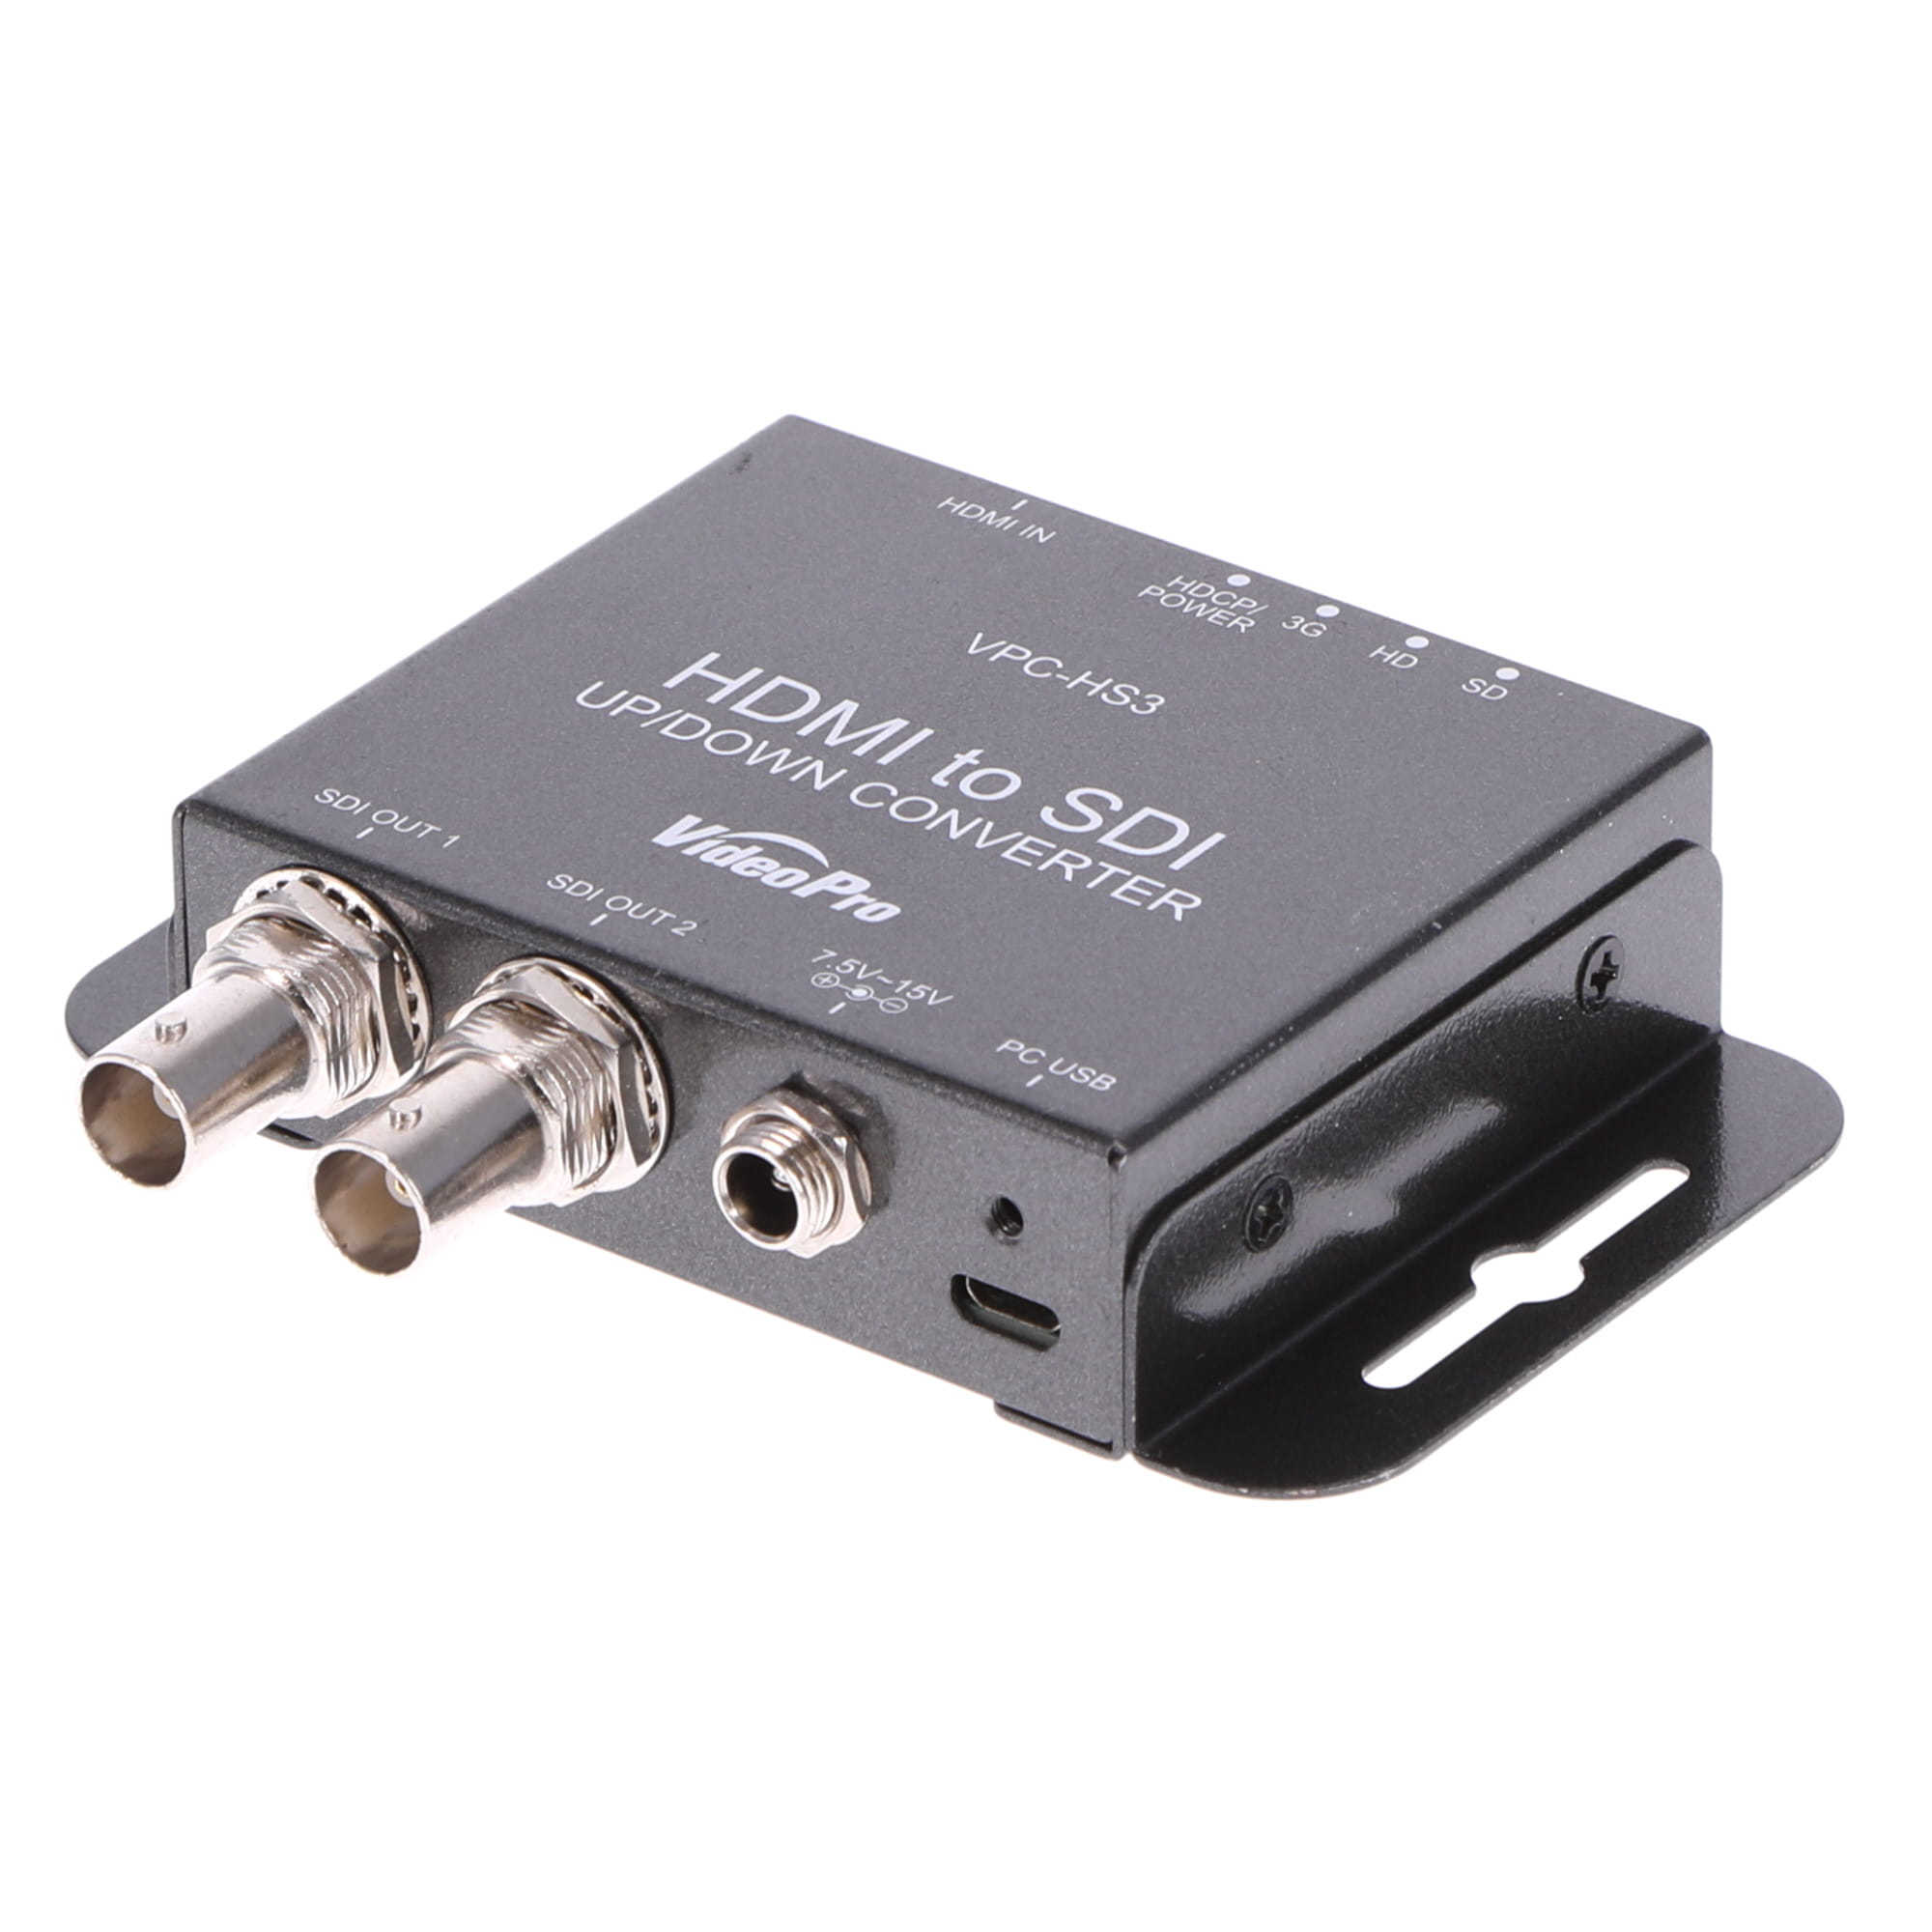 【開封済み未使用品】HDMI to SDIコンバーター VPC-HS3